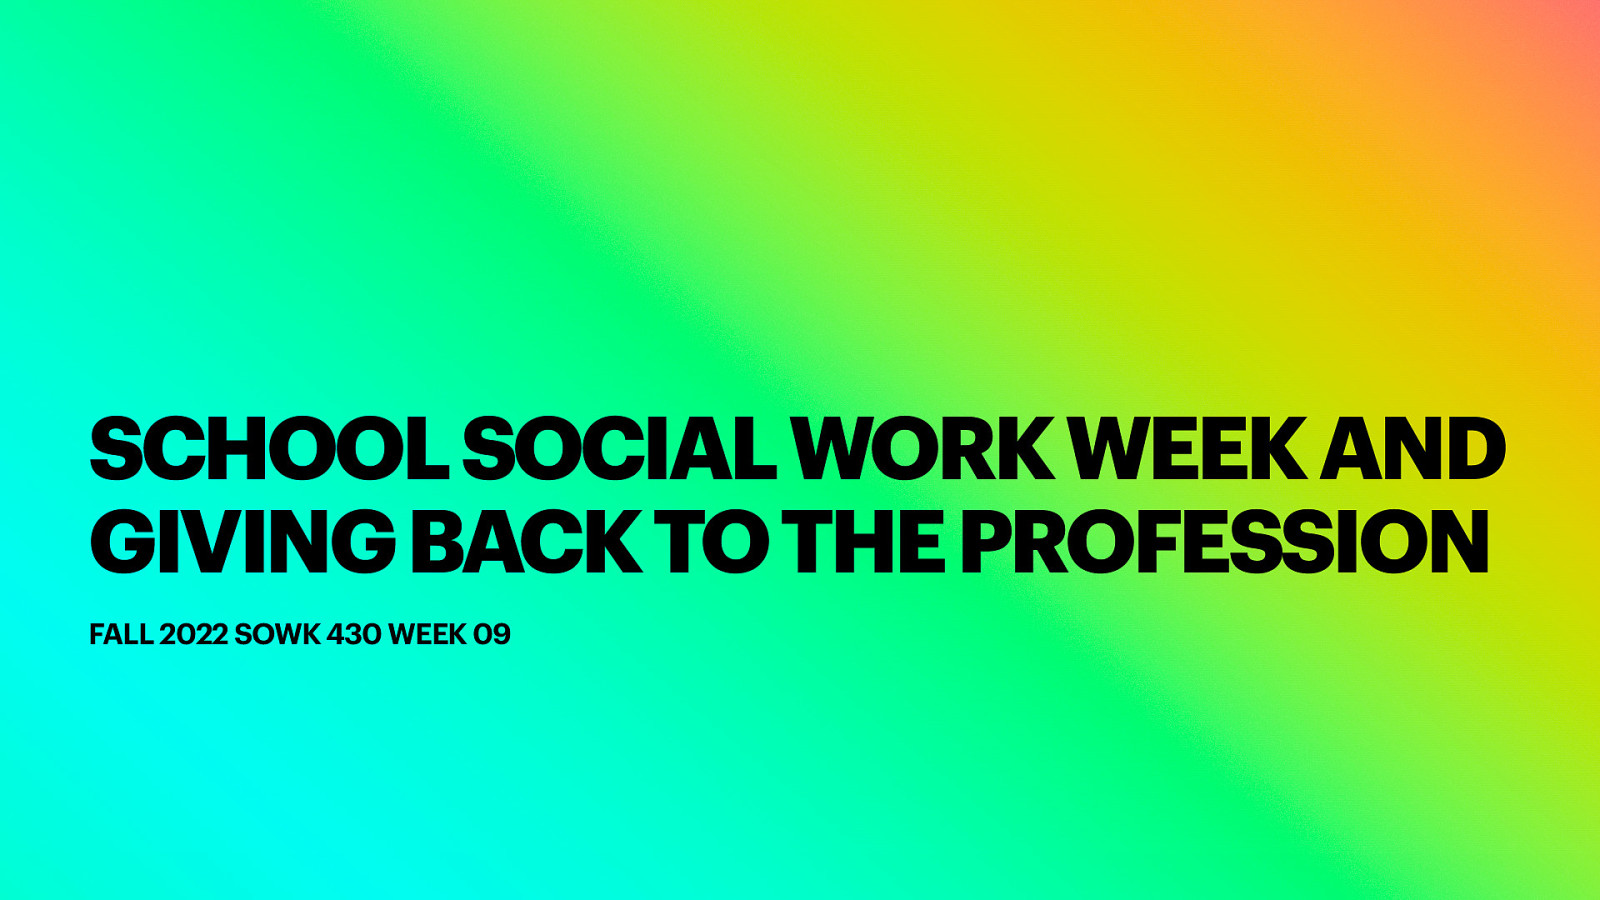 Fall 2022 SOWK 430 Week 09 - School Social Worker Week